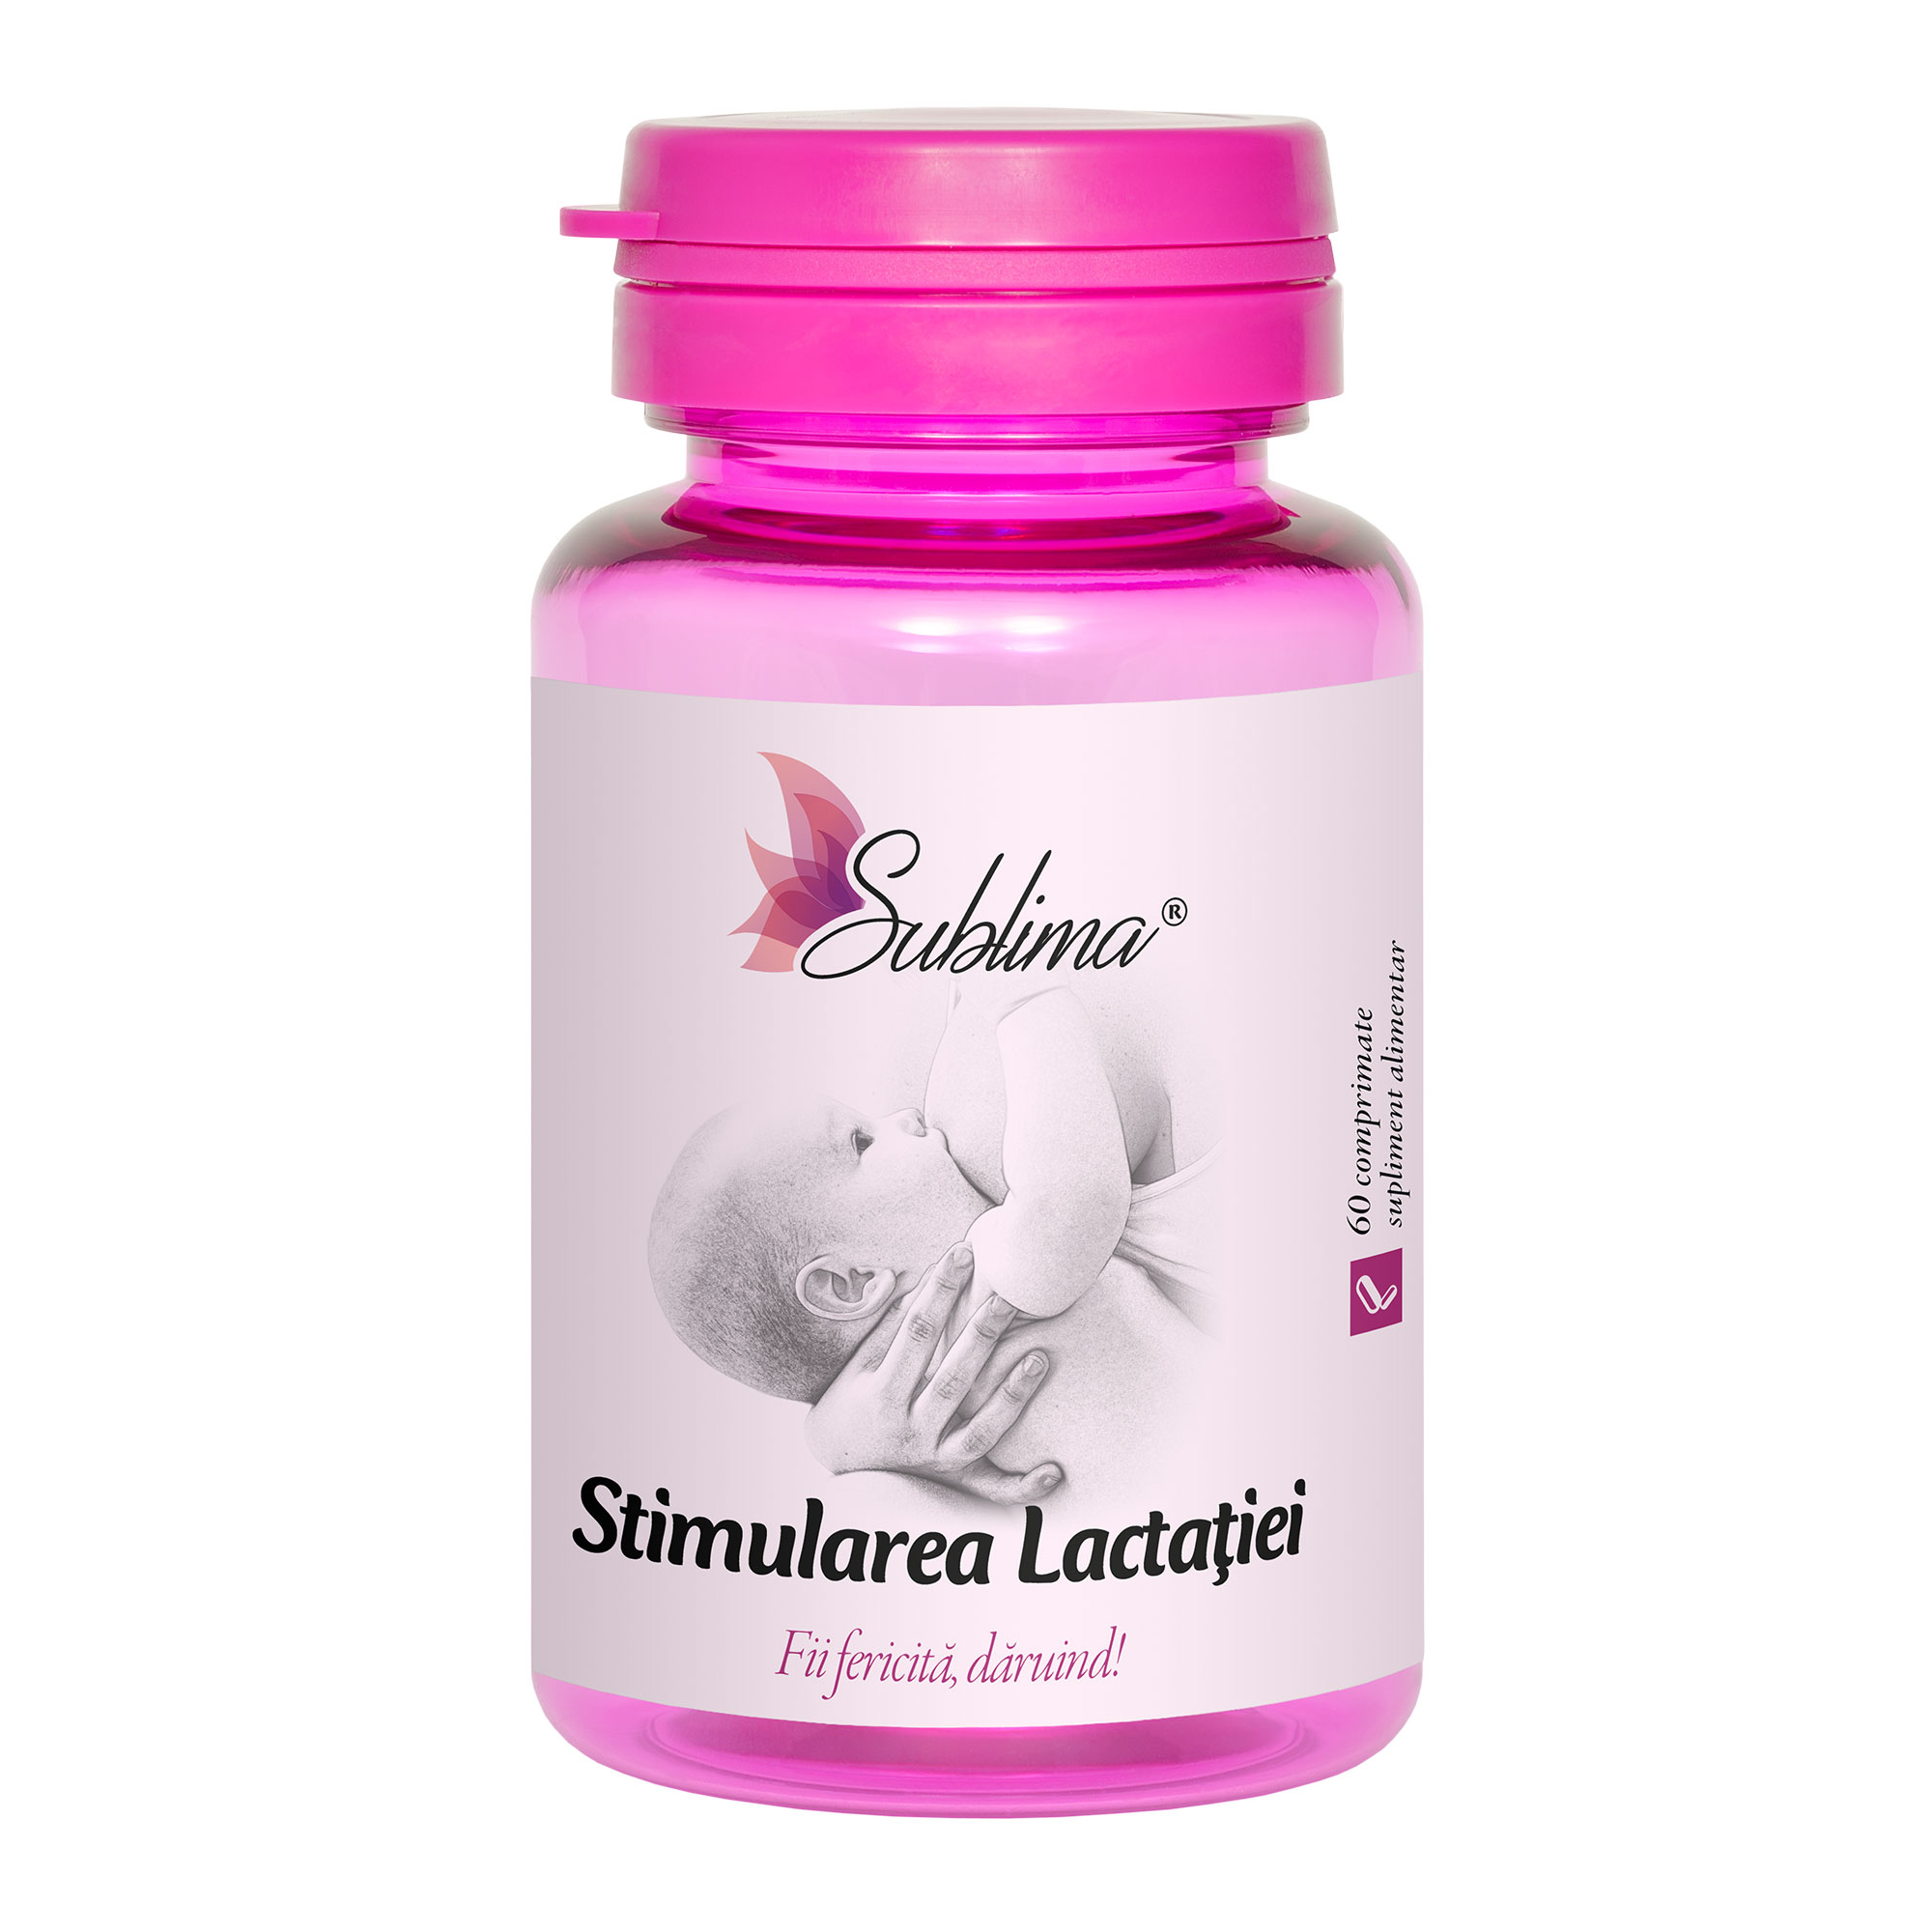 Sublima Stimularea Lactatiei comprimate daciaplant.ro